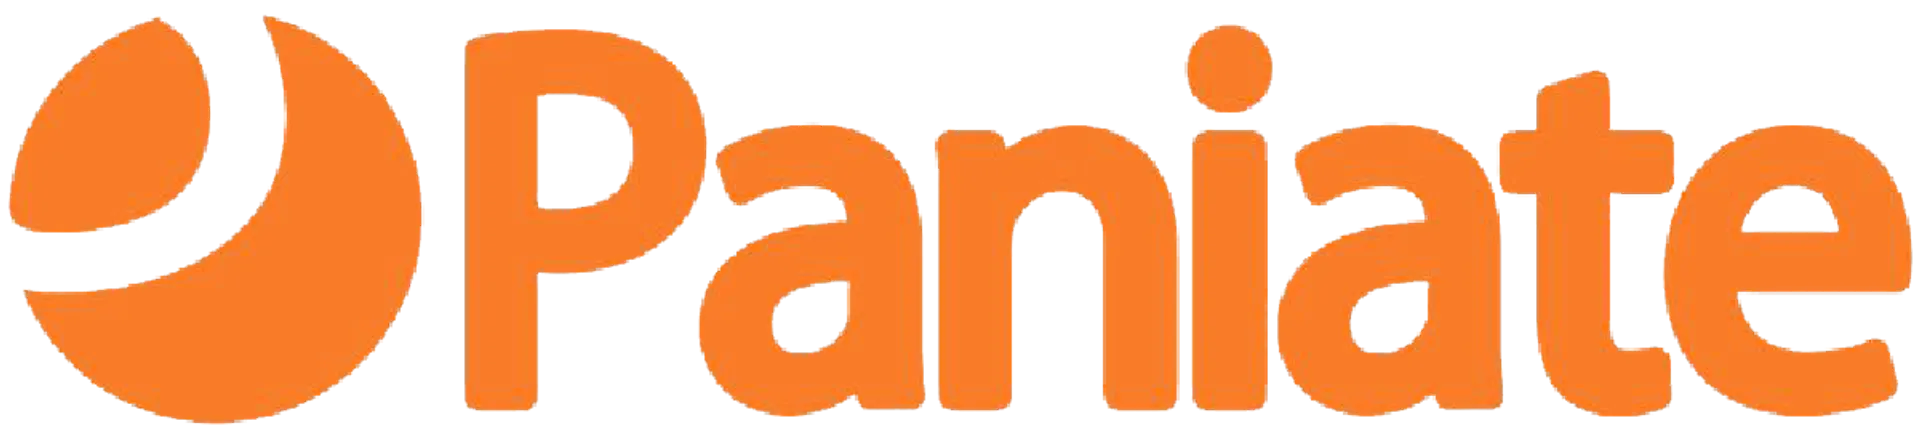 PANIATE logo